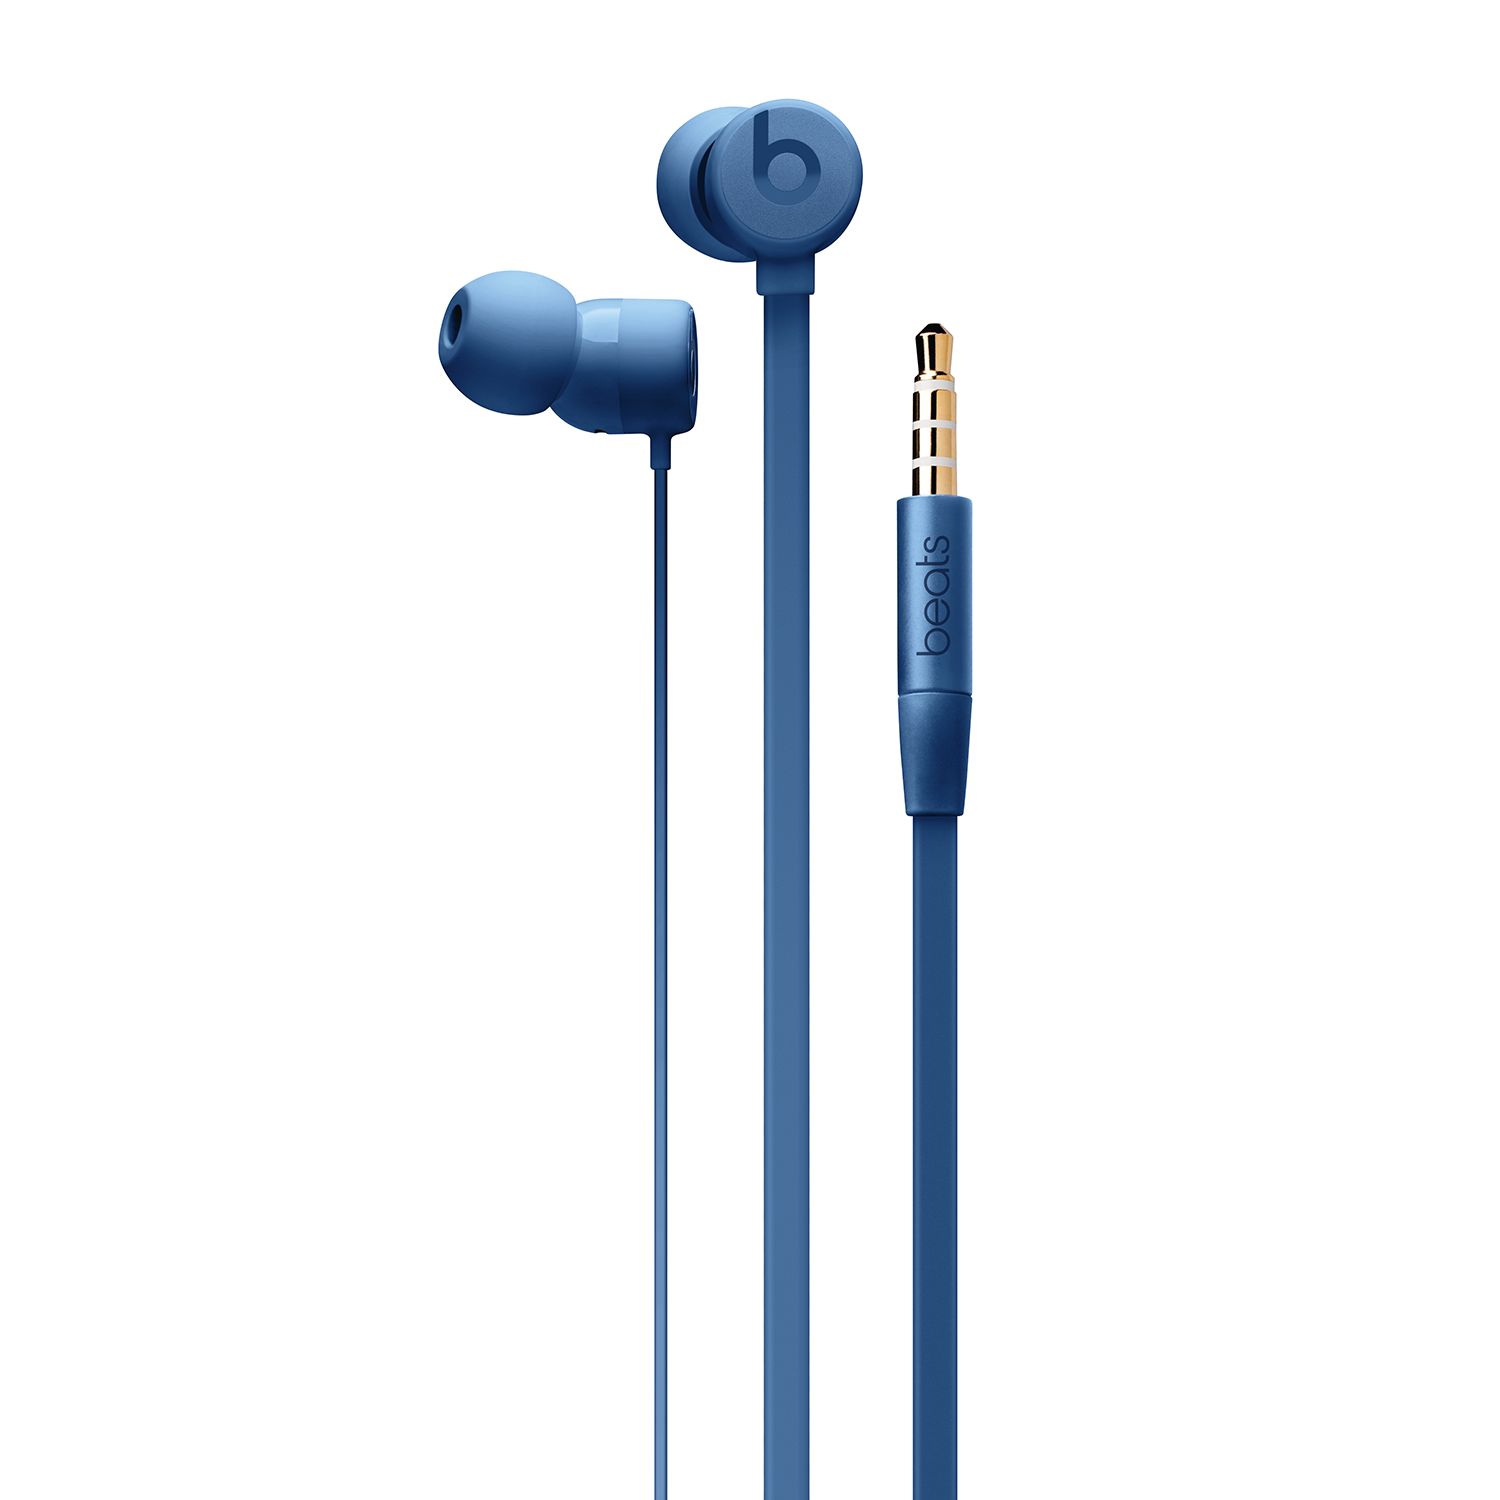 beats earphones 3.5 mm